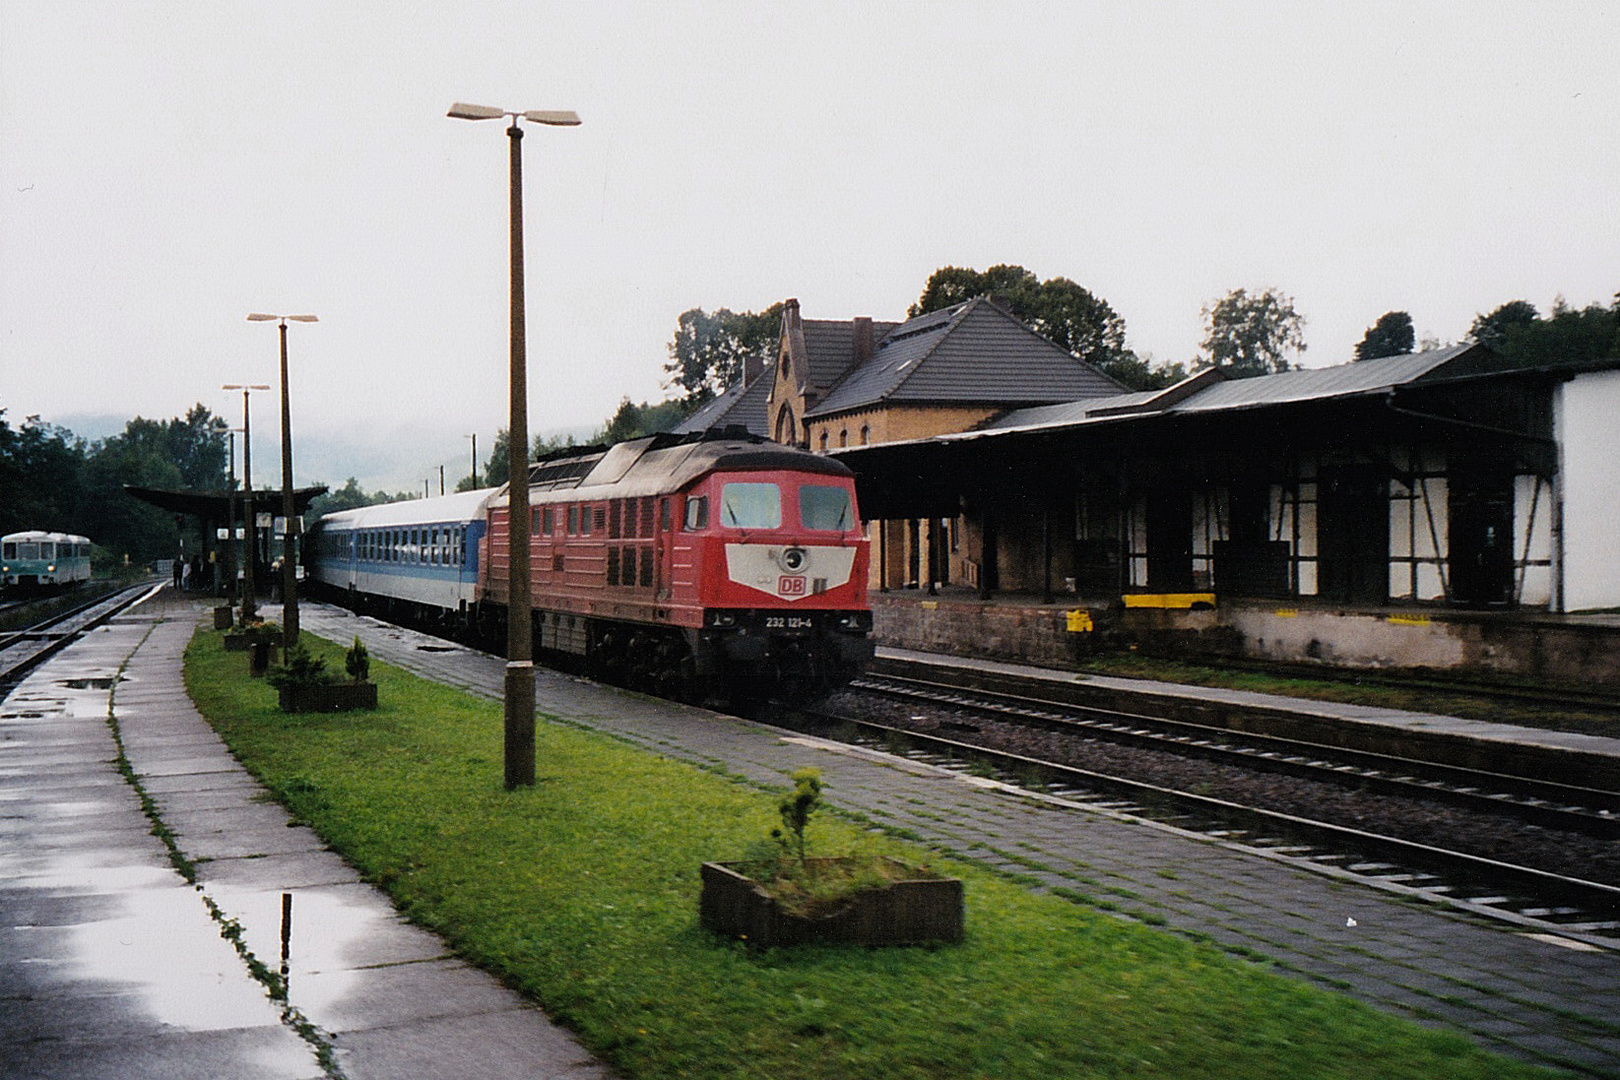 Bahnblick anno 1998